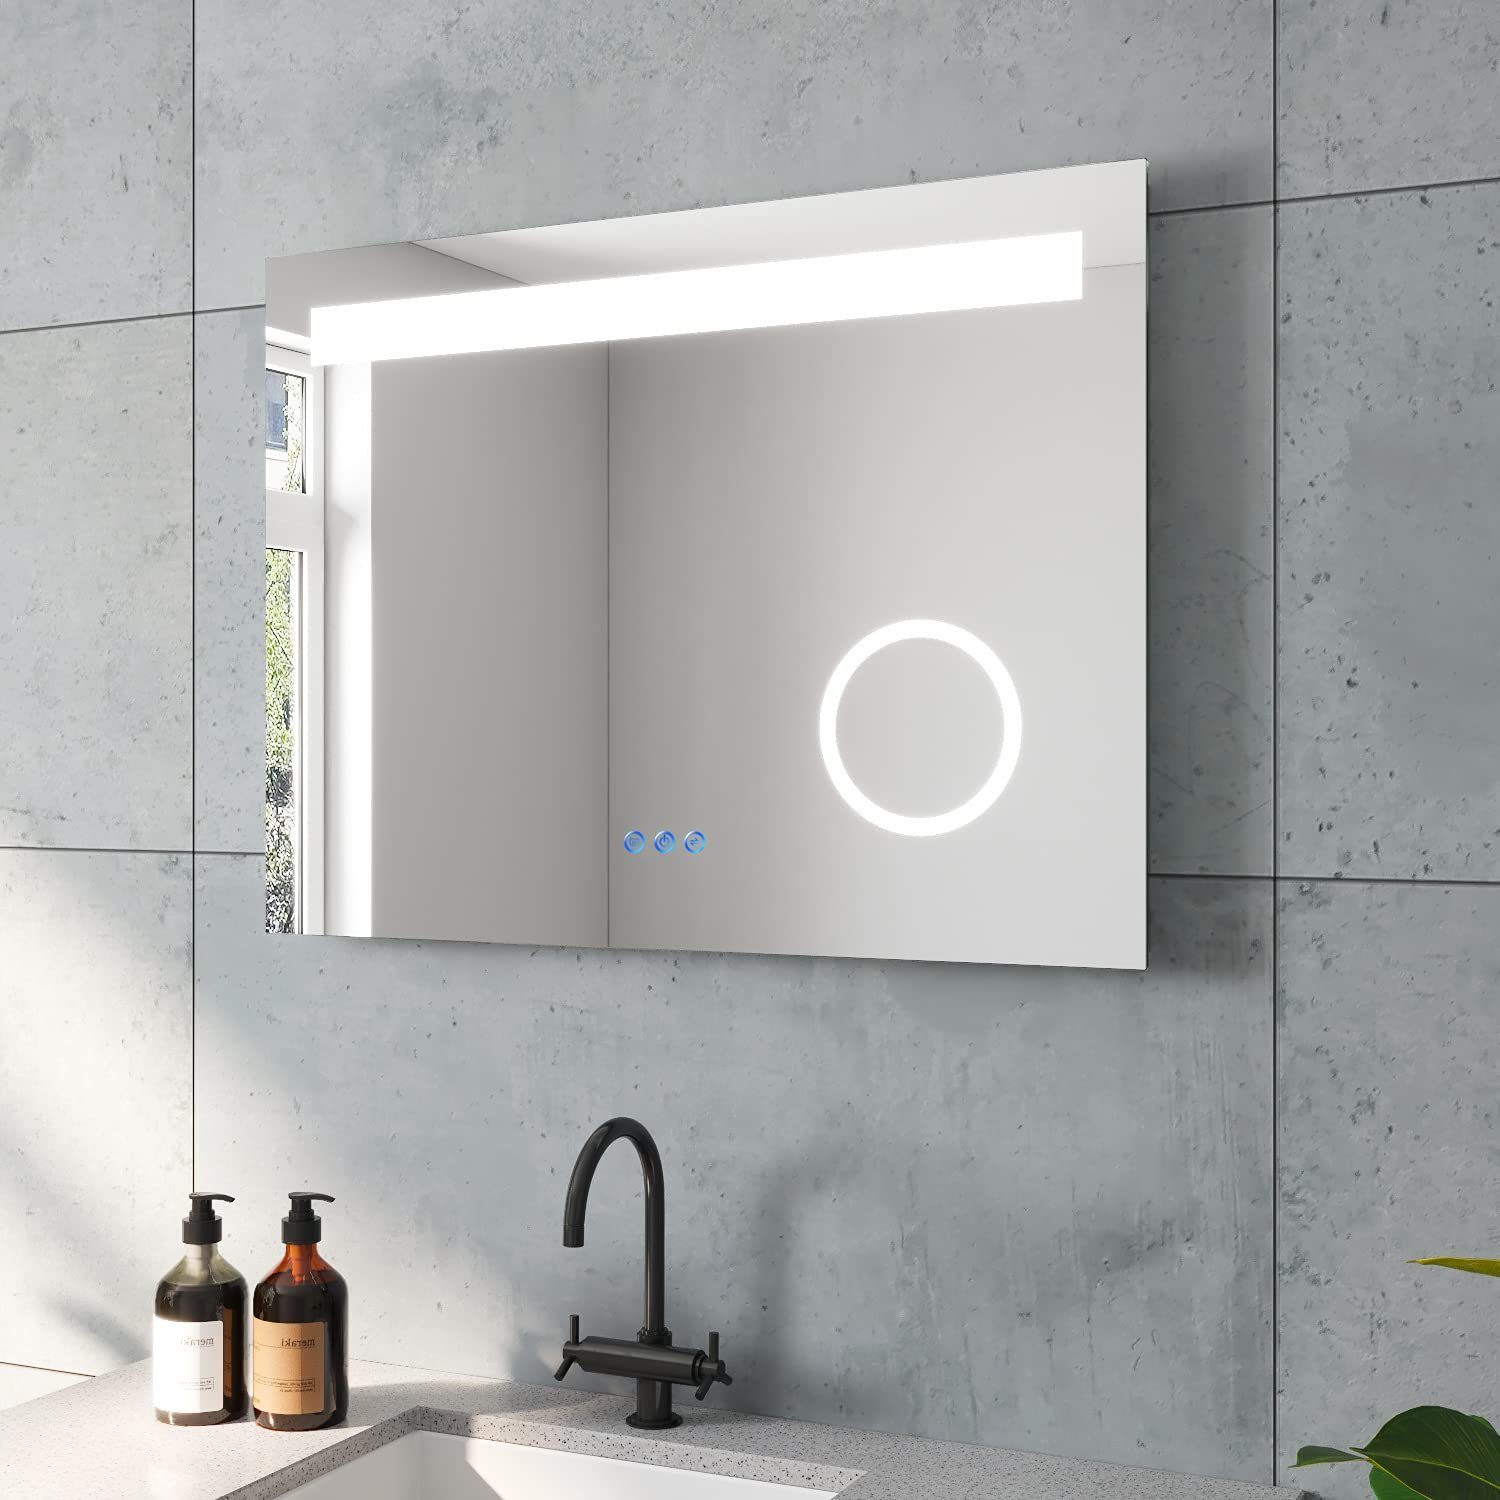 AQUABATOS Badspiegel LED Badspiegel mit Beleuchtung Lichtspiegel Wandspiegel, 3 Lichtfarben Kosmetikspiegel Beleuchtet Beschlagfrei Touch